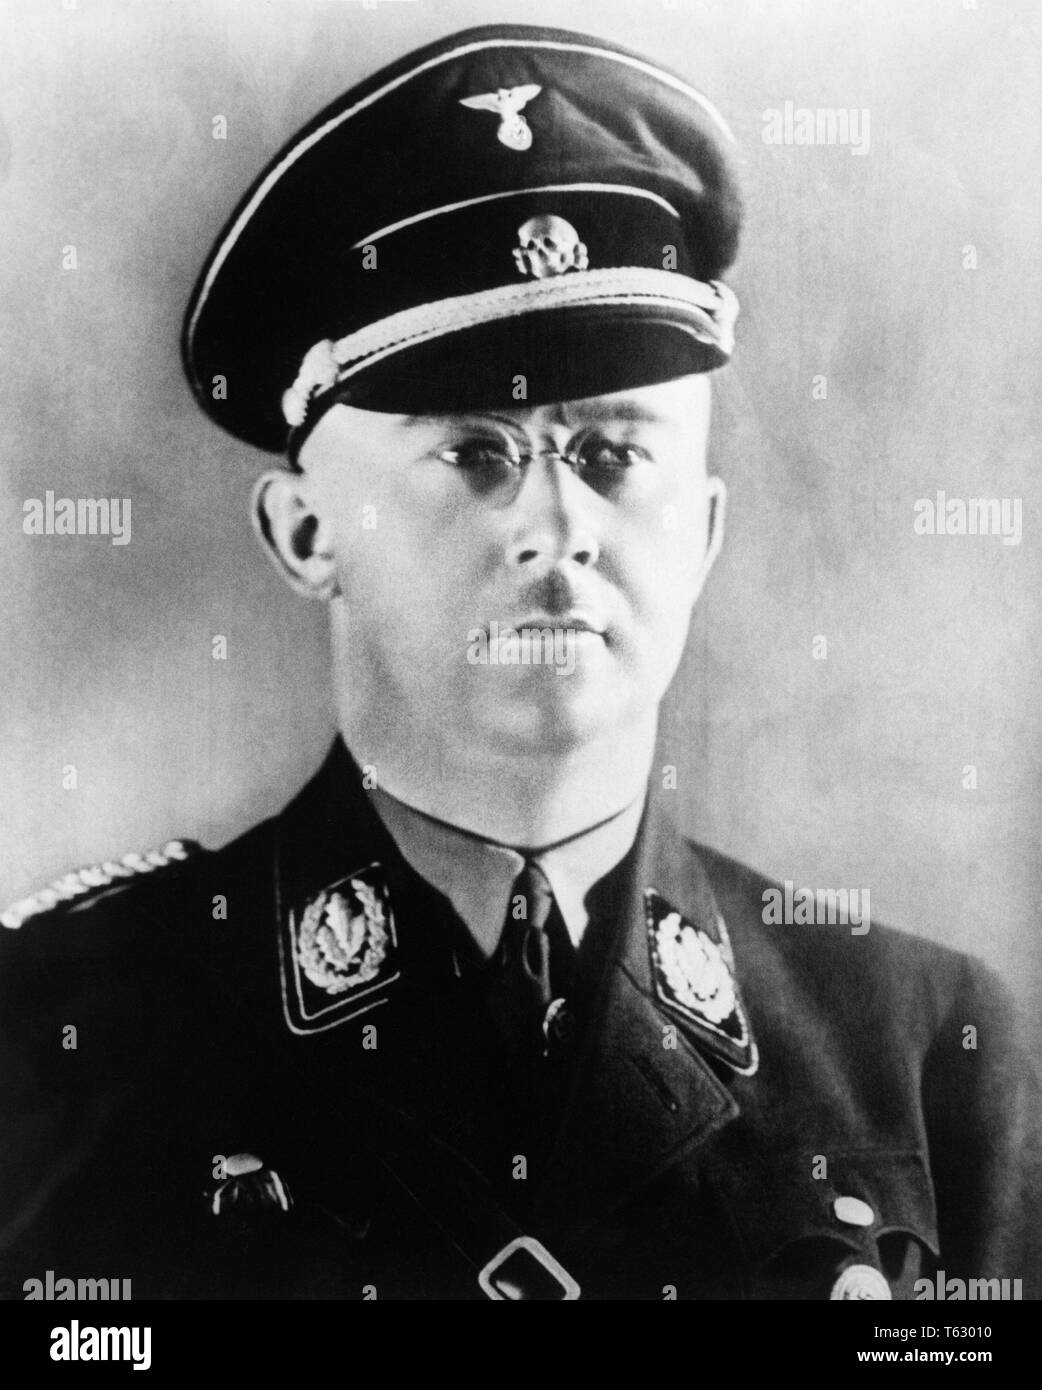 1930s 1940s ritratto Heinrich Himmler COMANDANTE DEL TEDESCO SS naziste - Q72083 CPC001 HARS MID-adulto metà uomo adulto SS suicidio in bianco e nero di etnia caucasica in vecchio stile Foto Stock